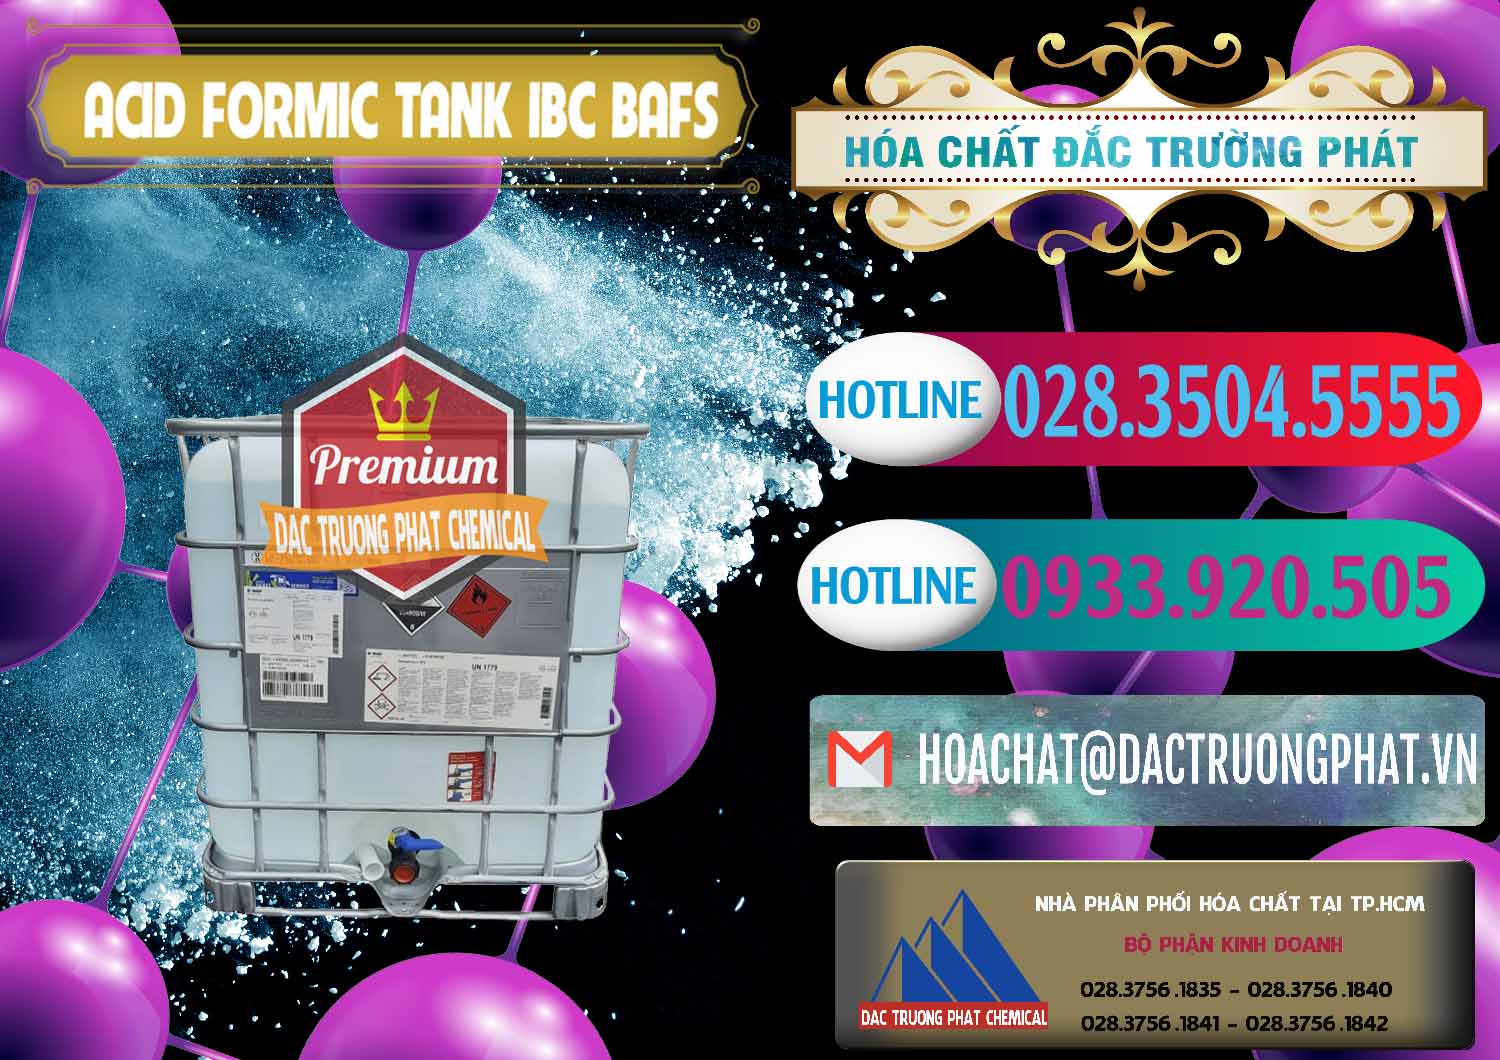 Công ty chuyên kinh doanh _ bán Acid Formic - Axit Formic Tank - Bồn IBC BASF Đức - 0366 - Chuyên phân phối & cung cấp hóa chất tại TP.HCM - truongphat.vn